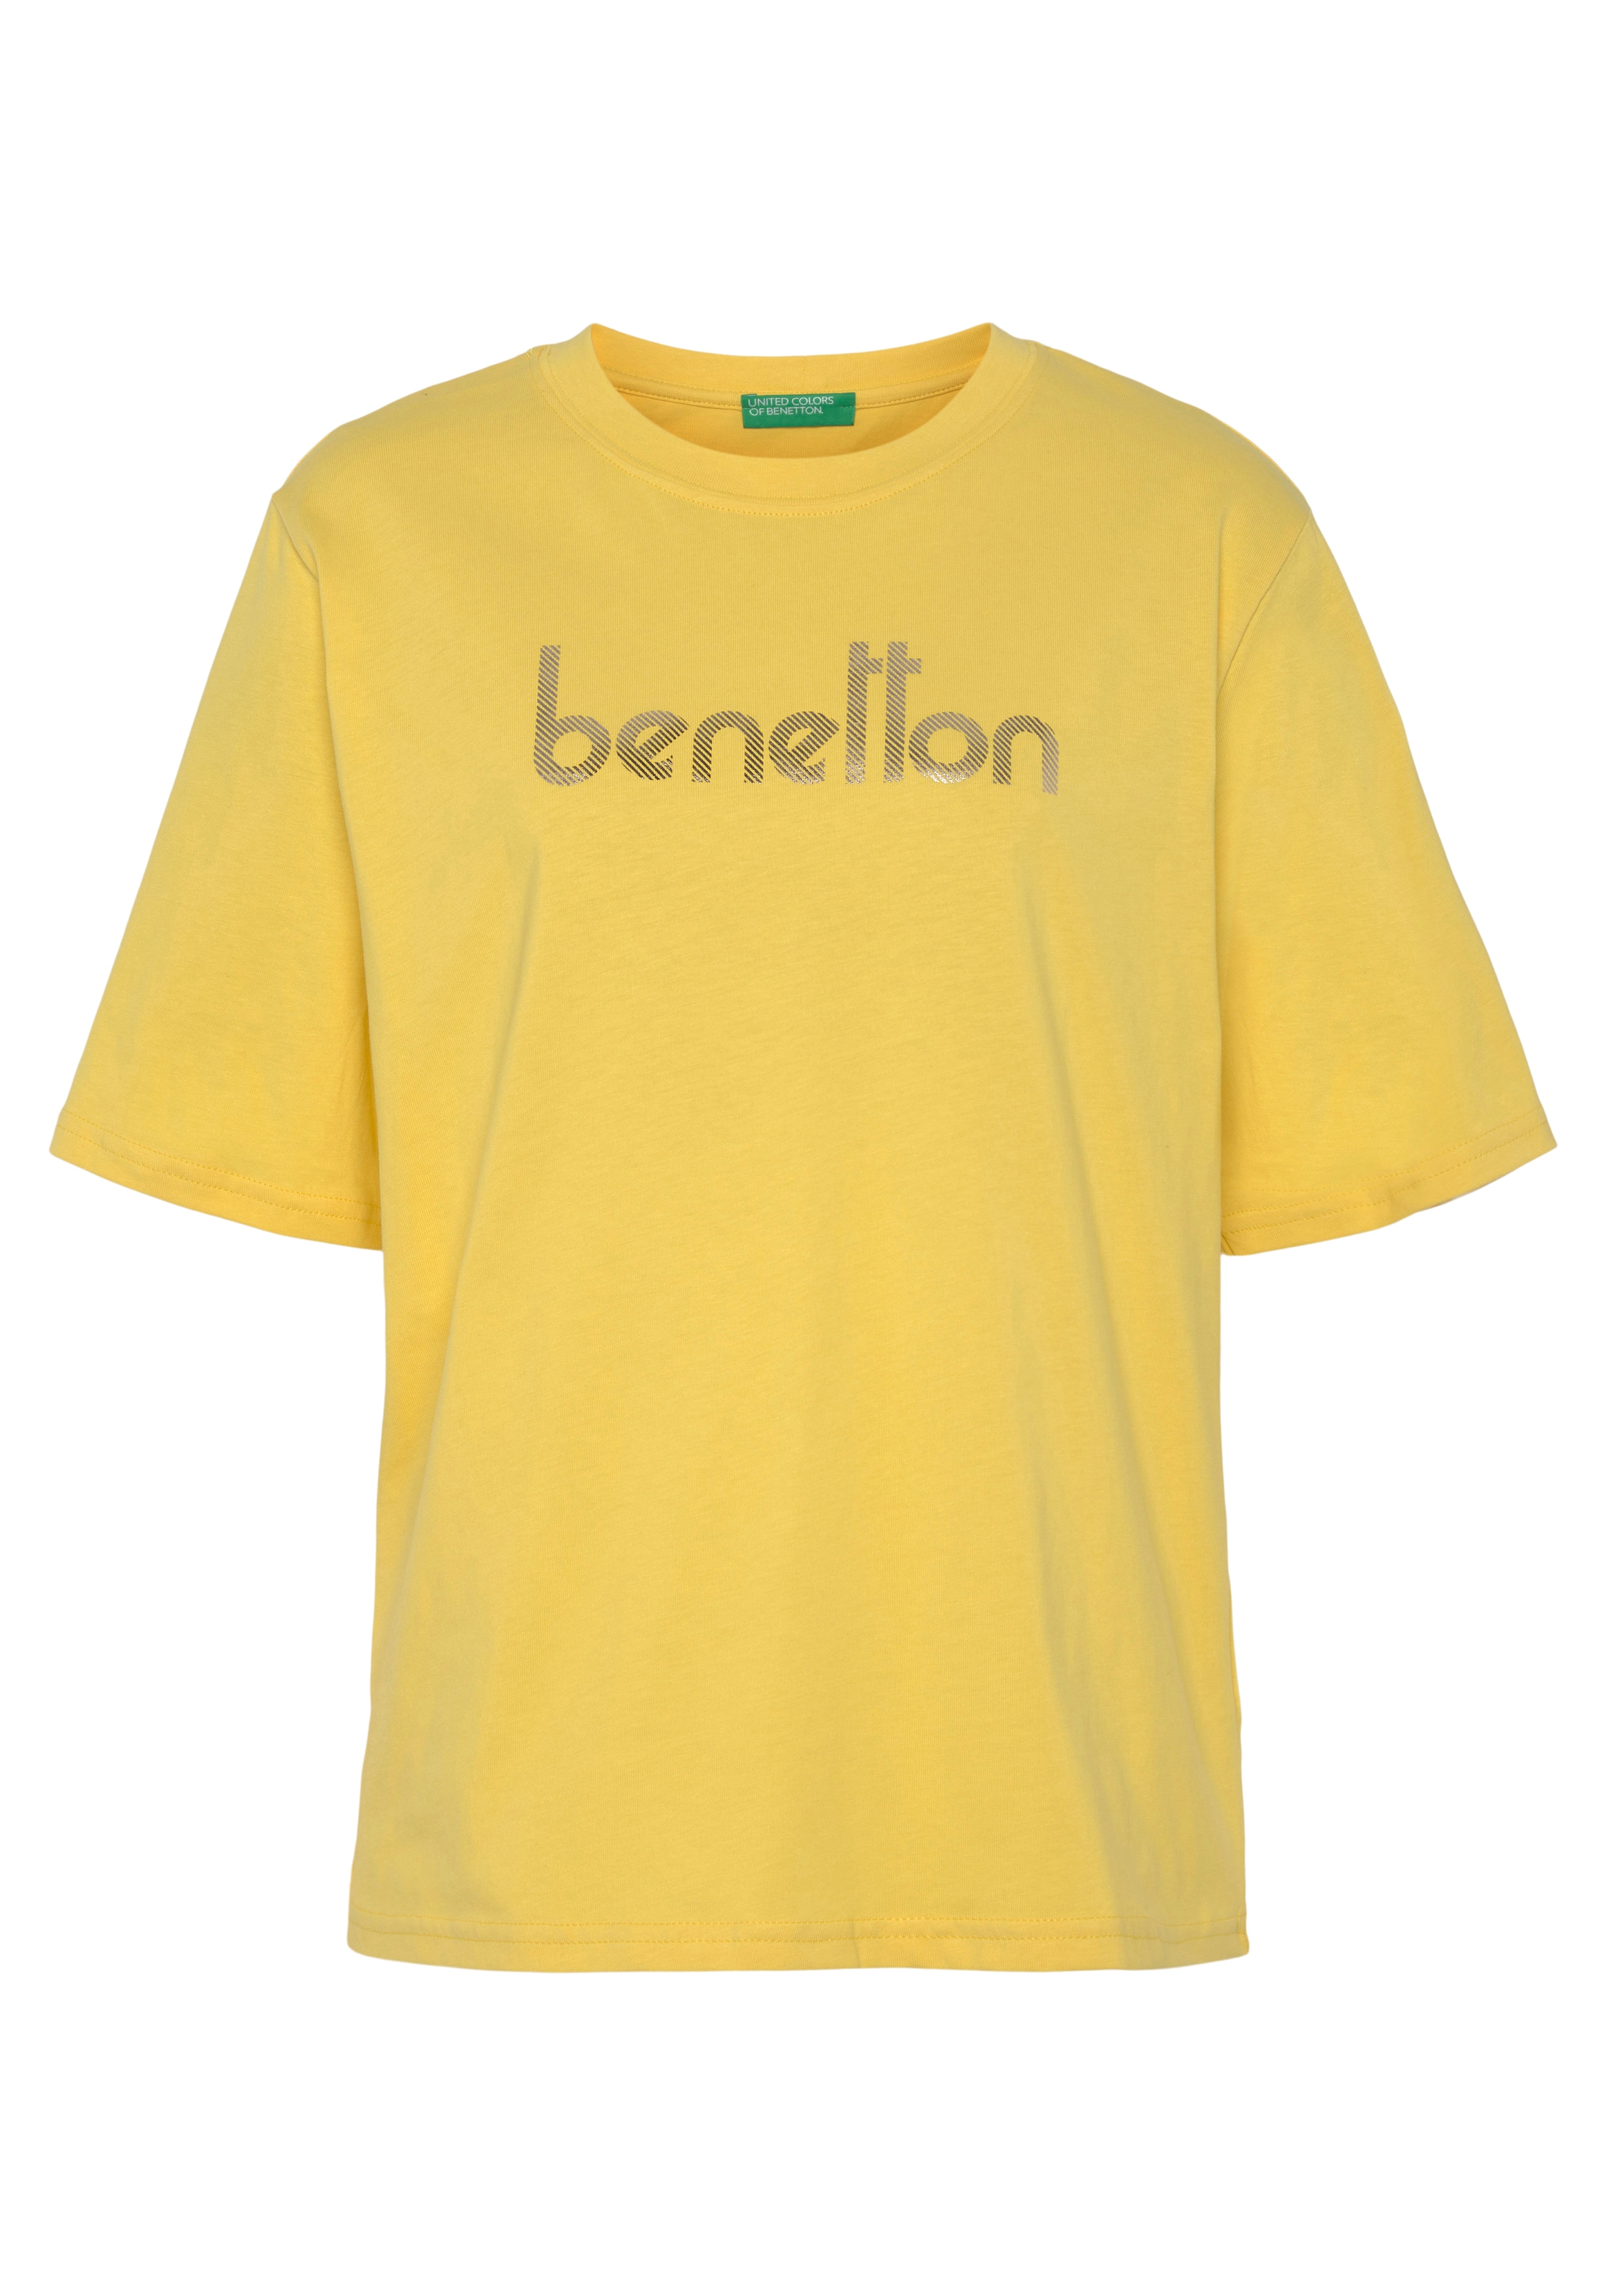 United Colors of Benetton bei Logodruck auf T-Shirt, ♕ mit der Brust